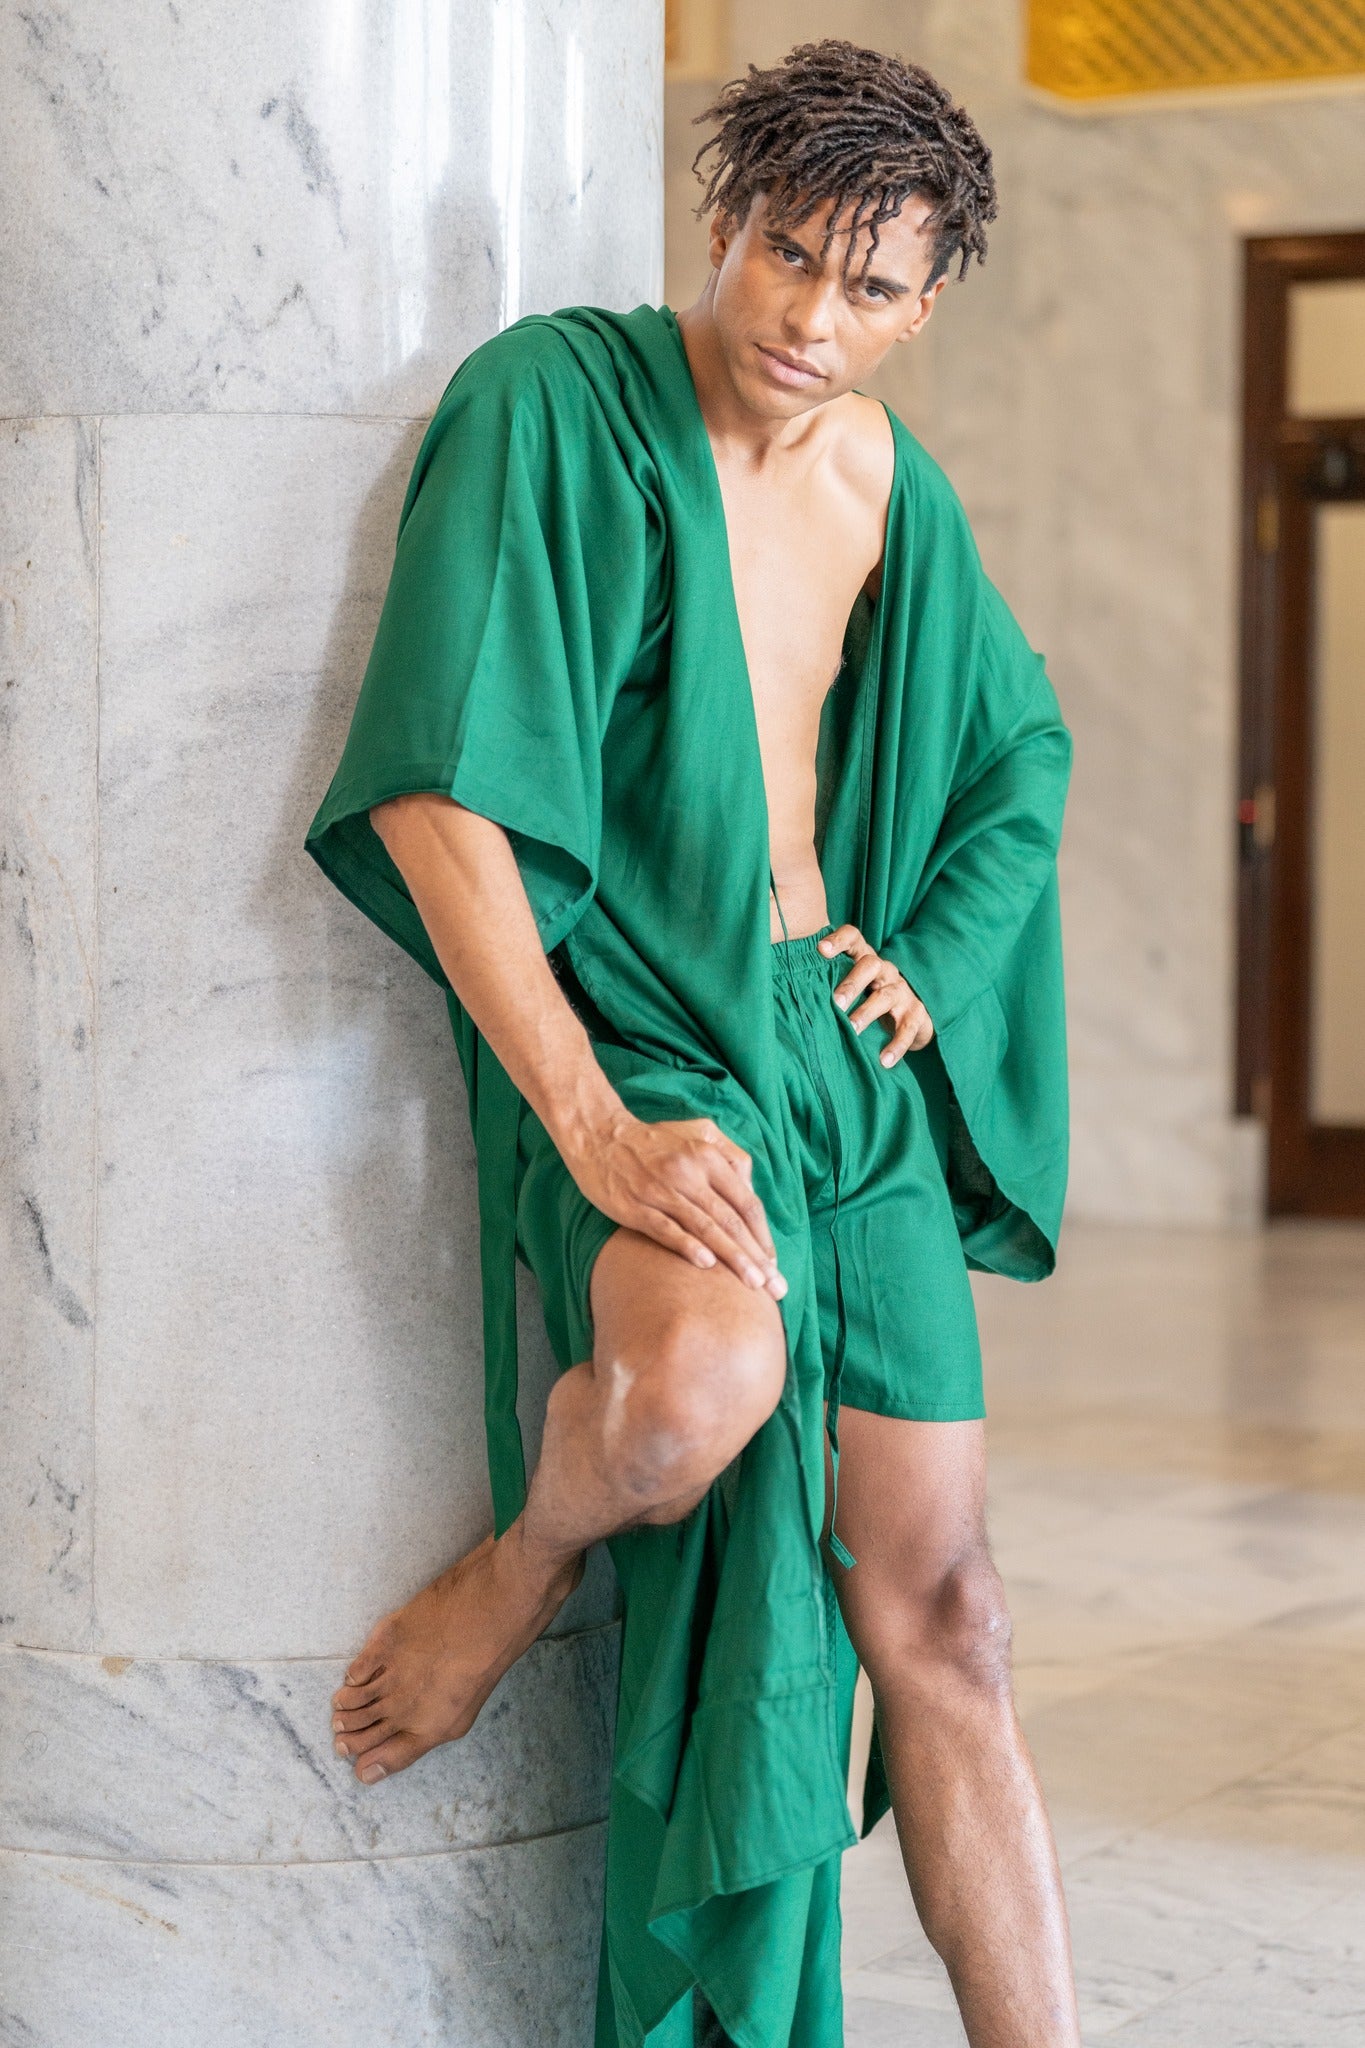 Green Robe For Men, Bath Robe For Men, groomsmen robe